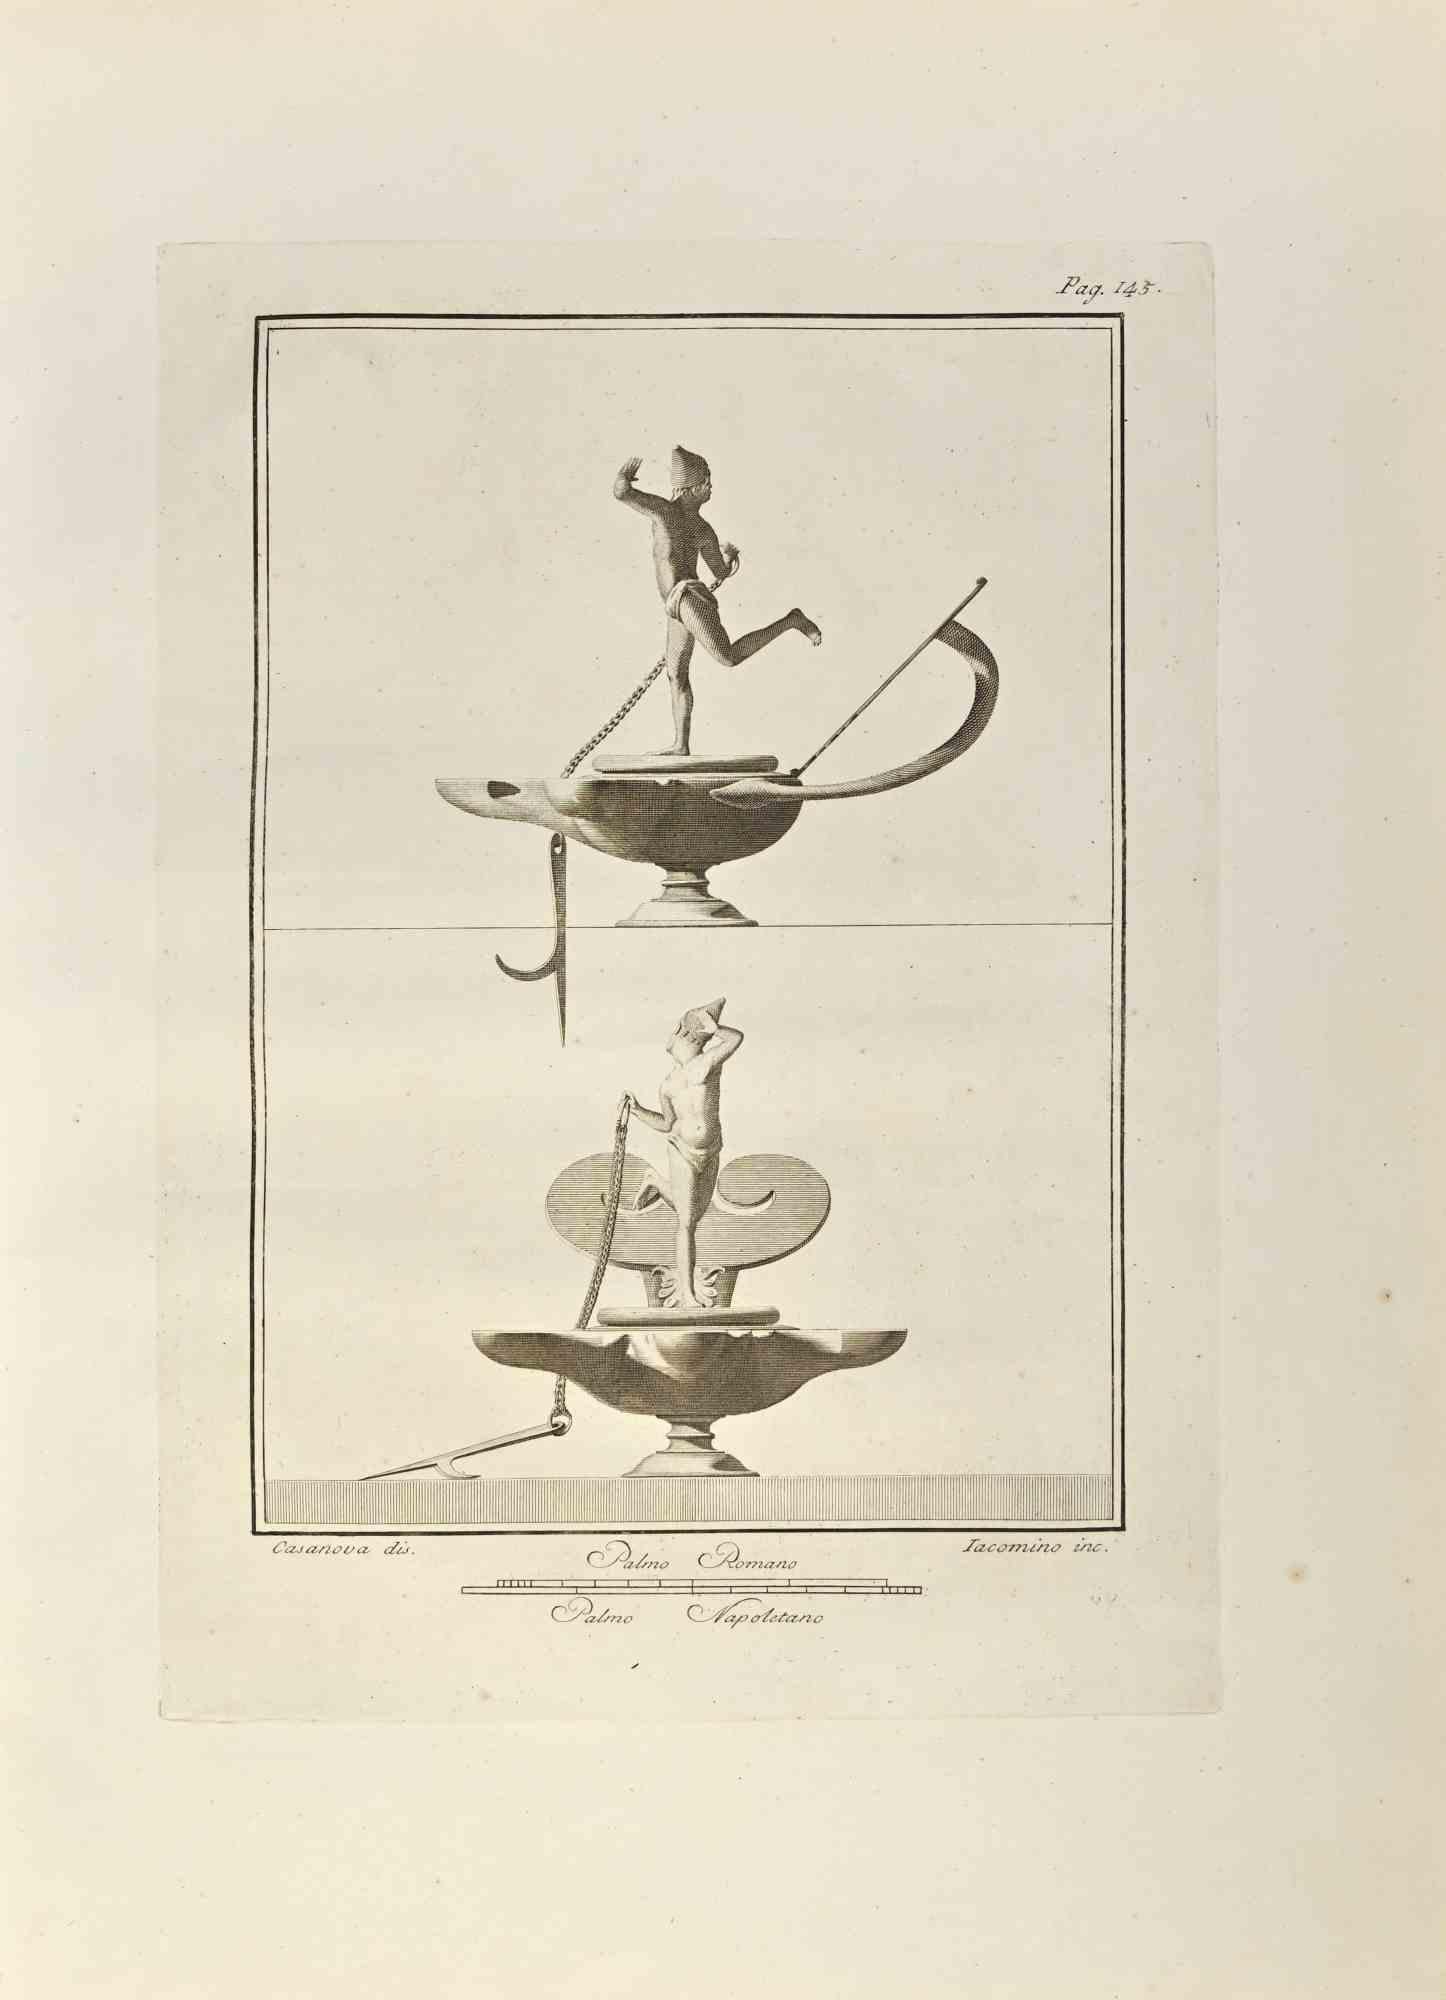 Lampe à huile avec marin des "Antiquités d'Herculanum" est une gravure sur papier réalisée par Marcantonio Iacomino et Giacomo Casanova au 18ème siècle.

Signé sur la plaque.

Bon état avec quelques rousseurs.

La gravure appartient à la suite